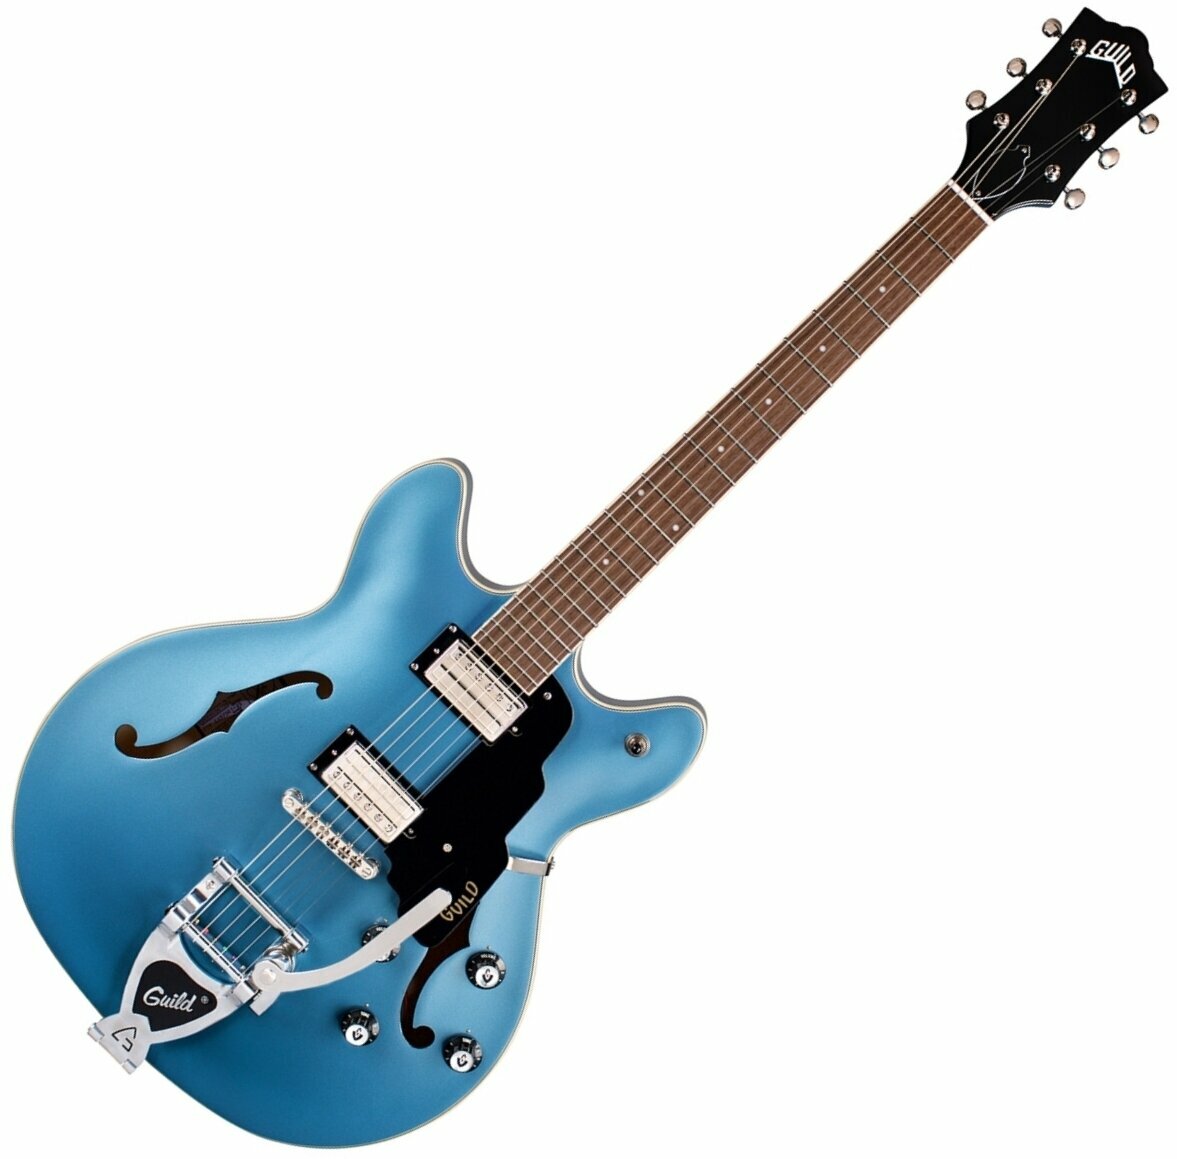 Semiakustická kytara Guild Starfire I DC with Guild Vibrato Tailpiece Pelham Blue